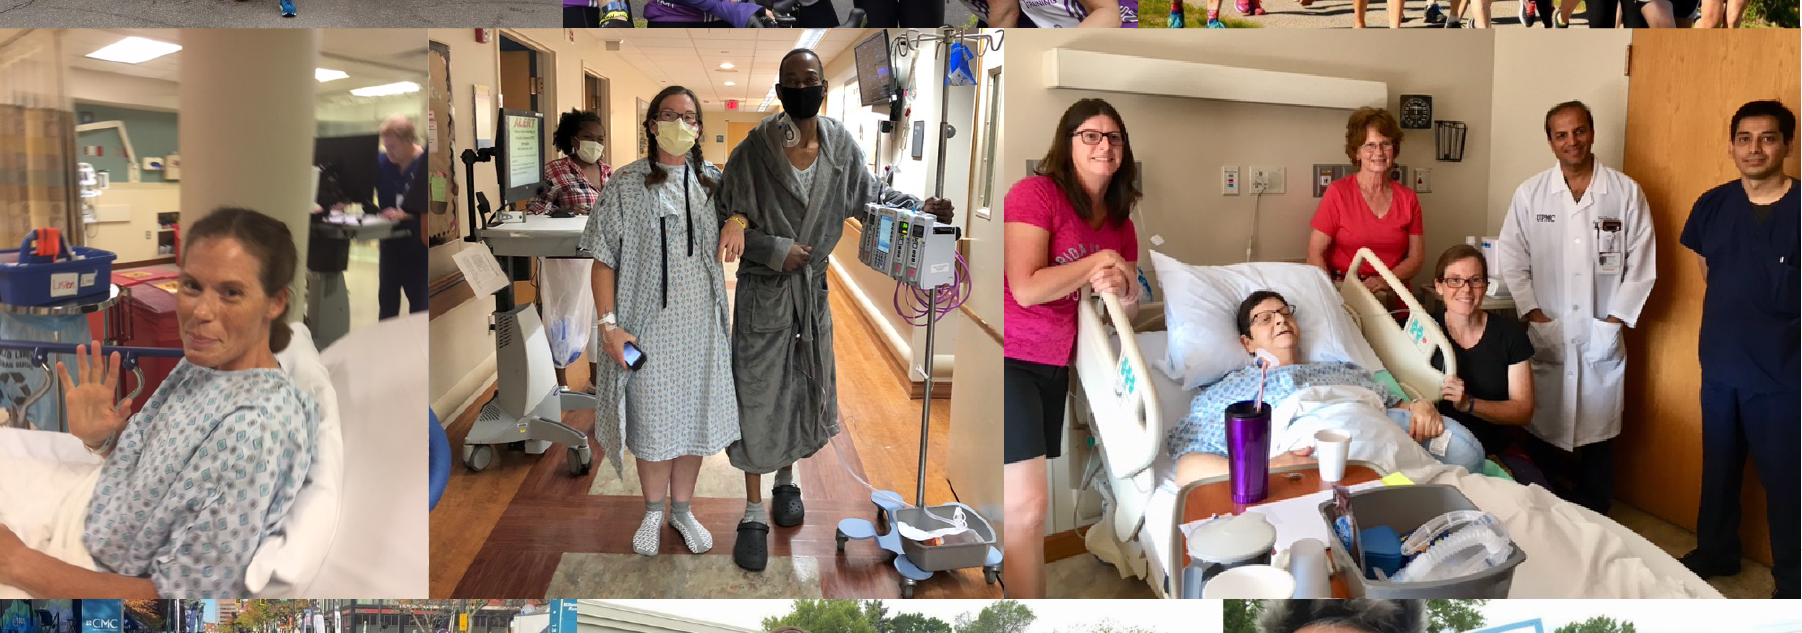 Collage of Rebekah Thomas volunteering, donating organs, and running.